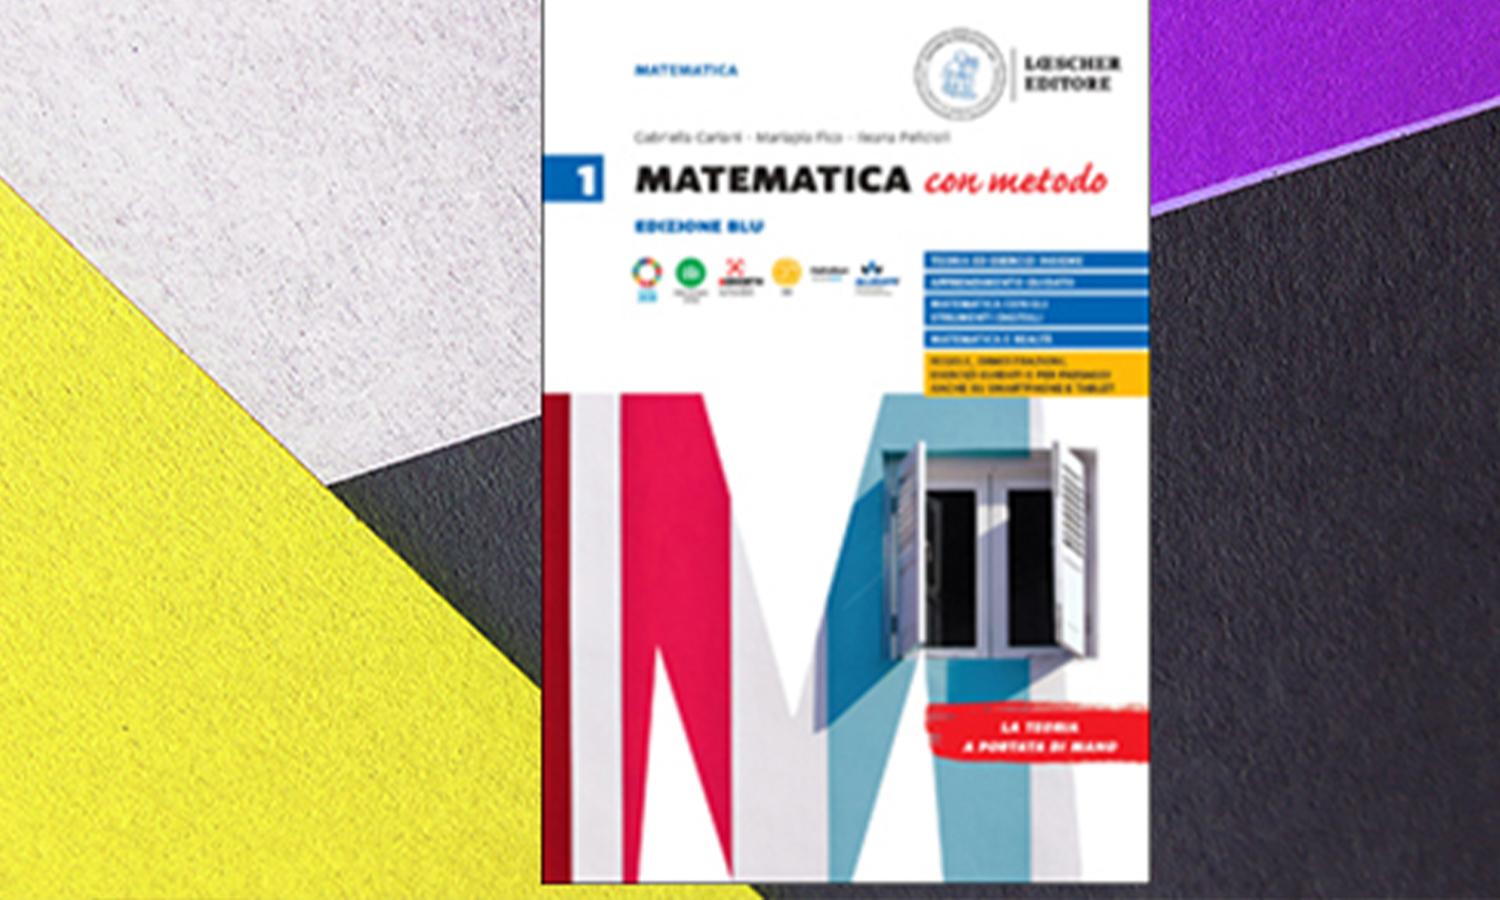 “Matematica con metodo”, di Cariani, Fico, Mattina, Pelicioli